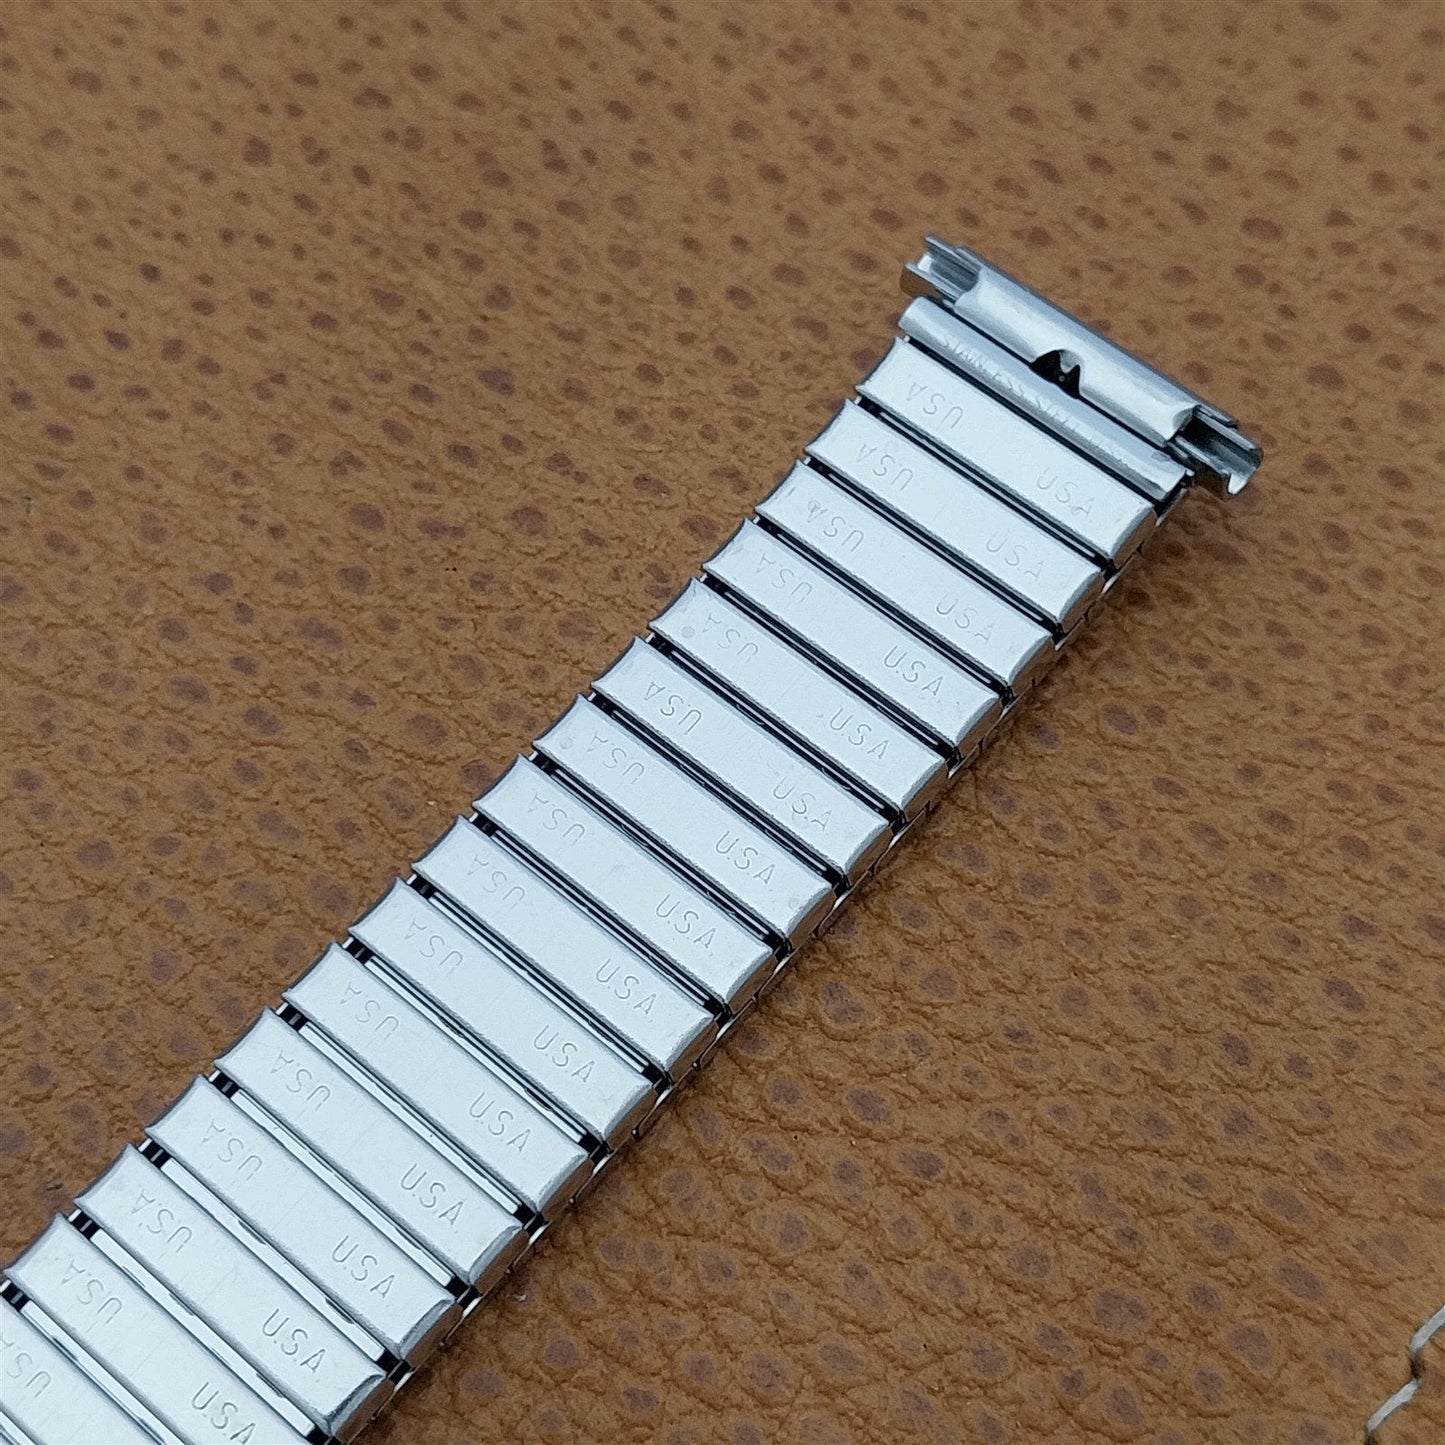 19mm 18mm 16mm Speidel Stainless Steel 1970s Twistoflex nos Vintage Watch Band